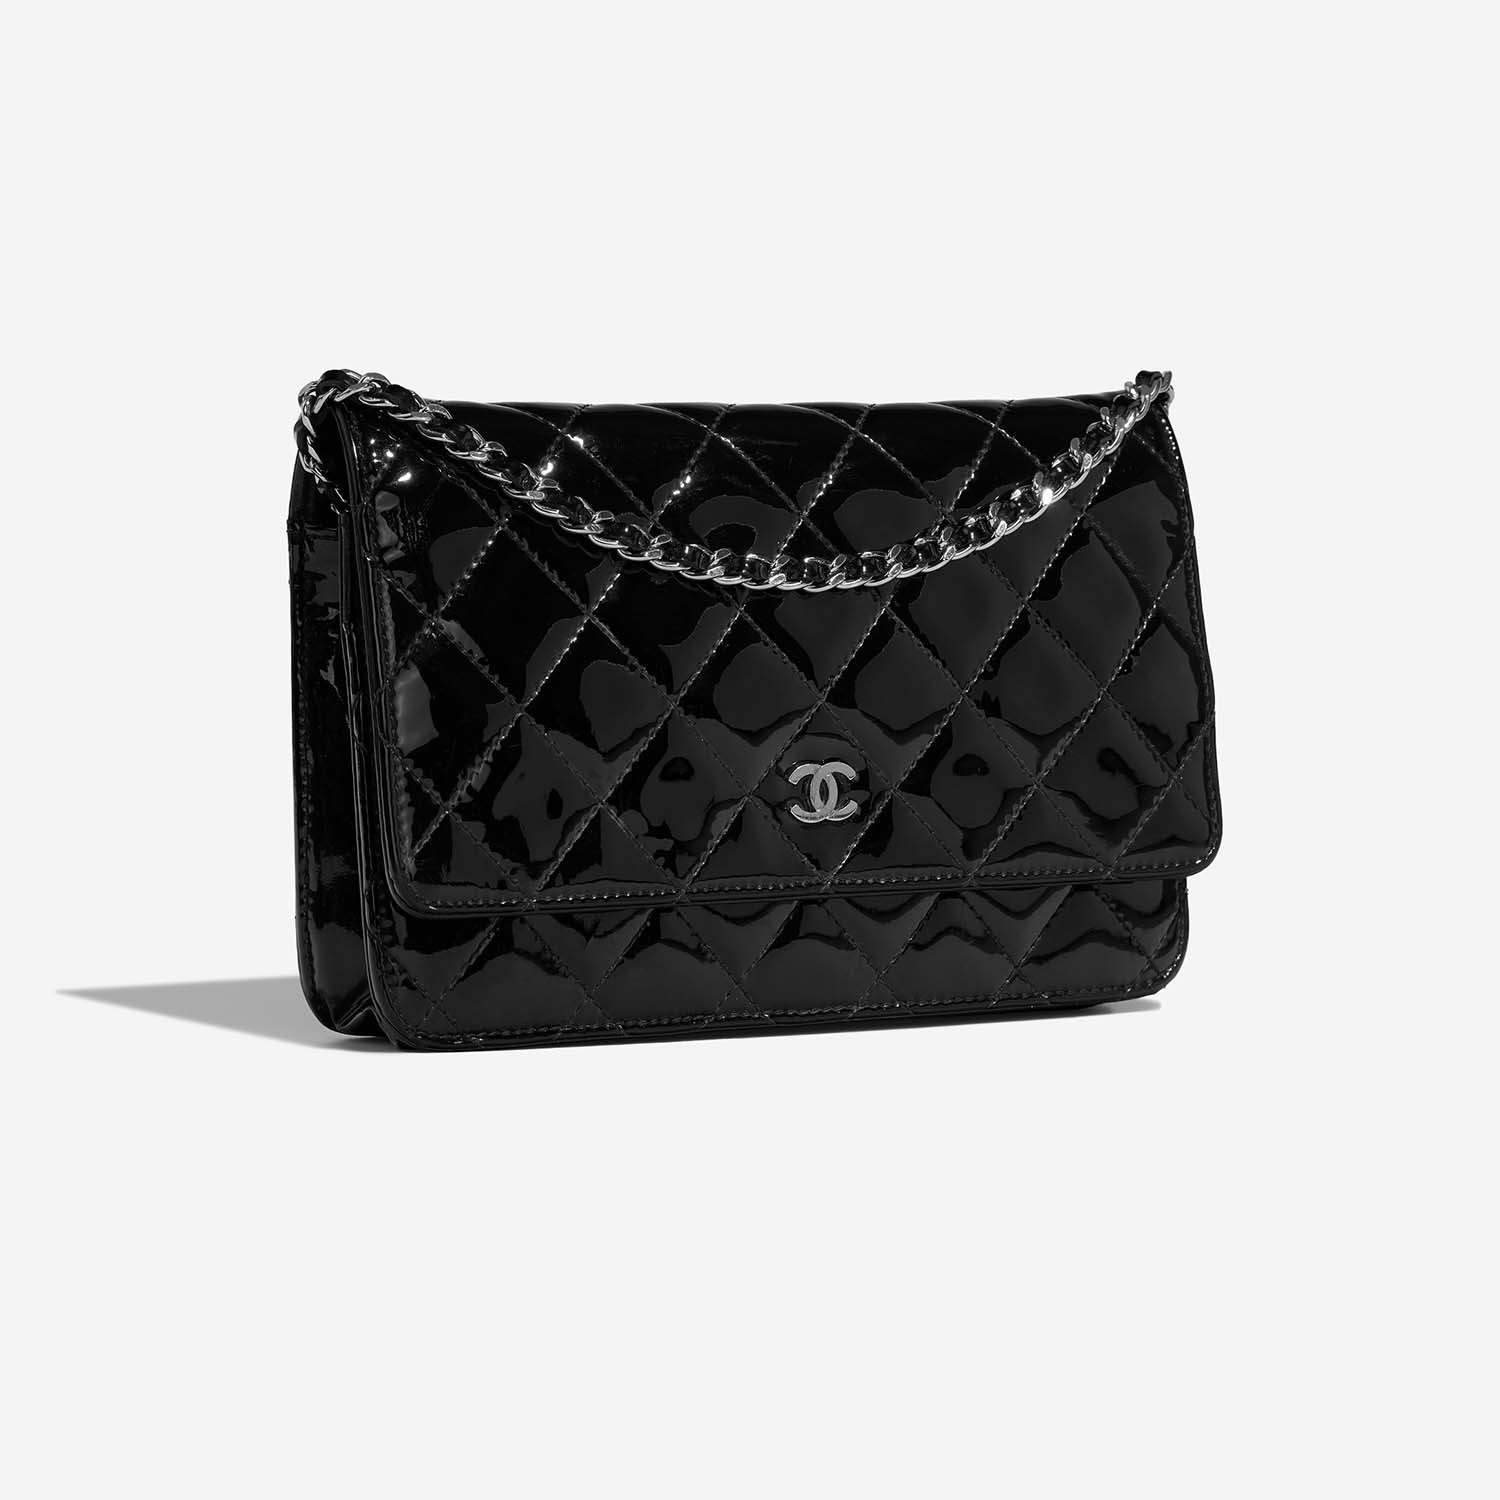 Chanel WOC Black Side Front | Verkaufen Sie Ihre Designer-Tasche auf Saclab.com